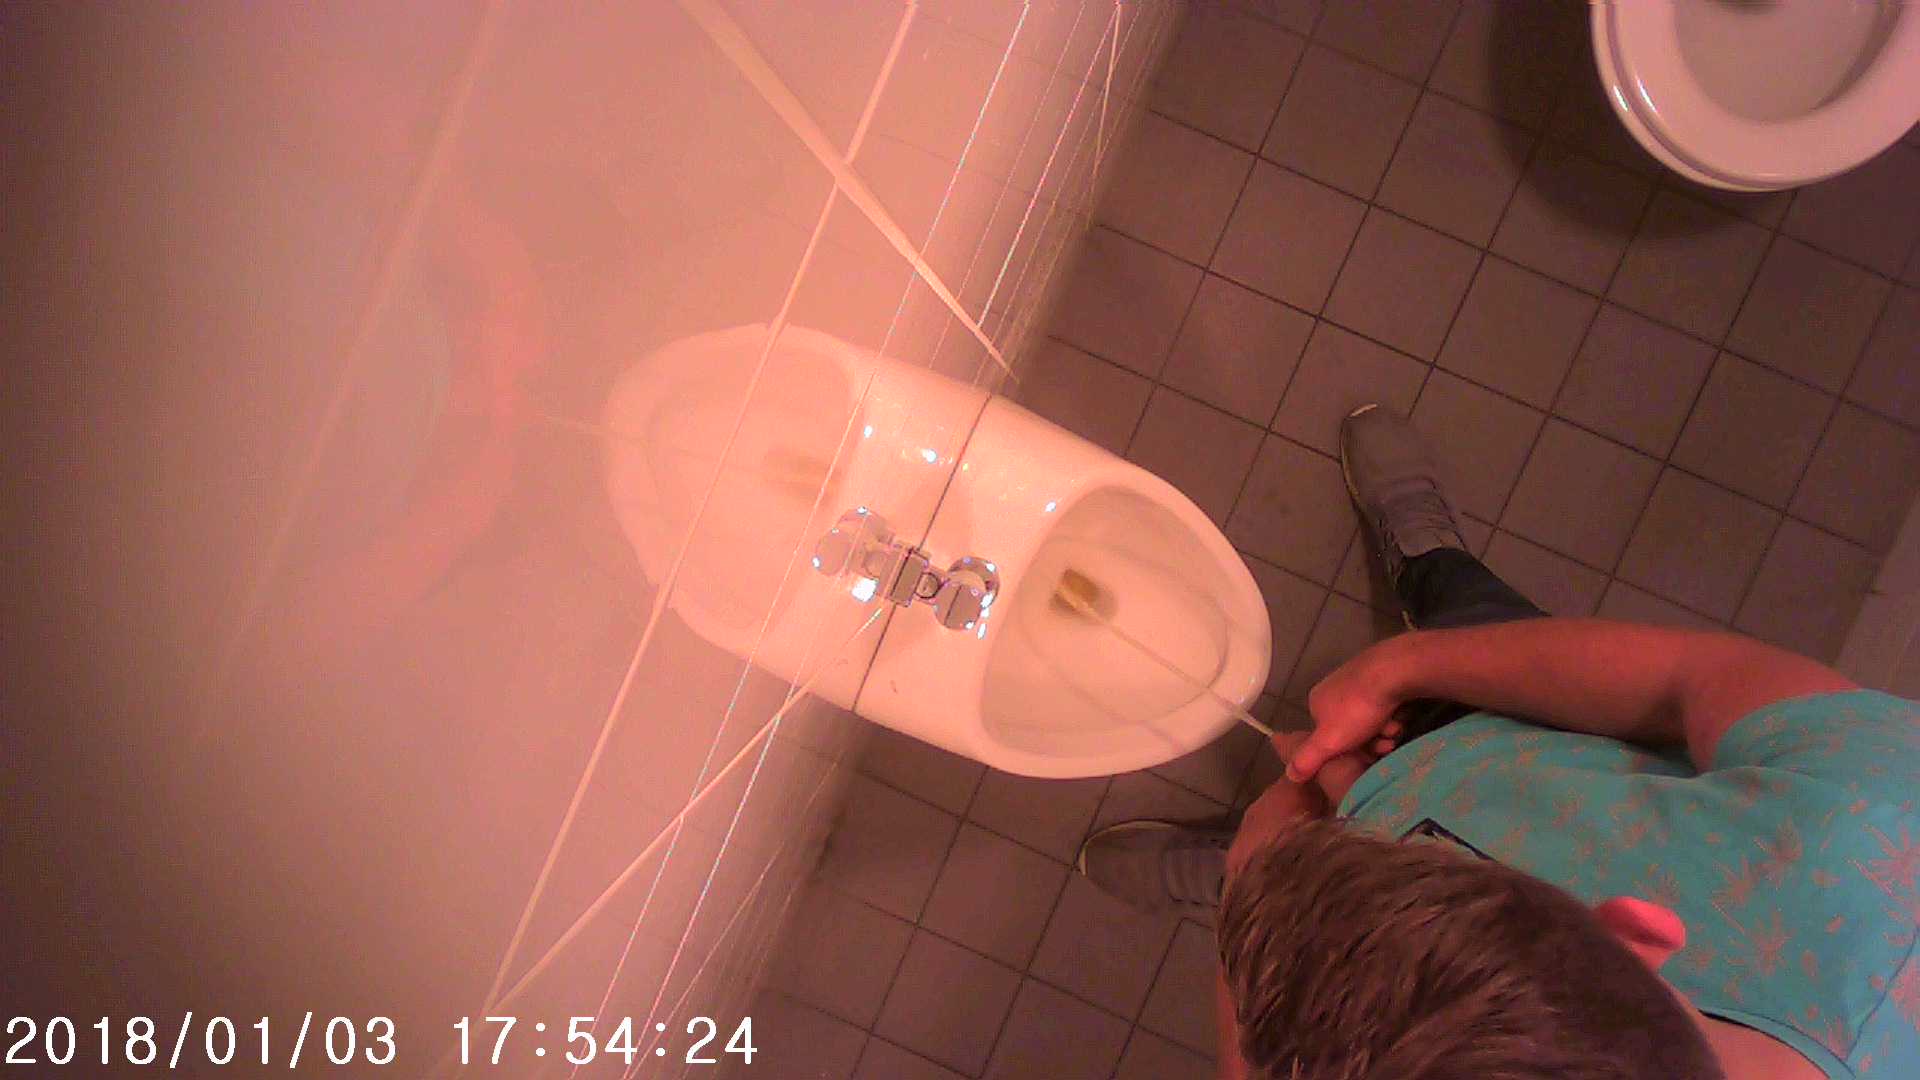 Toilet spying 2